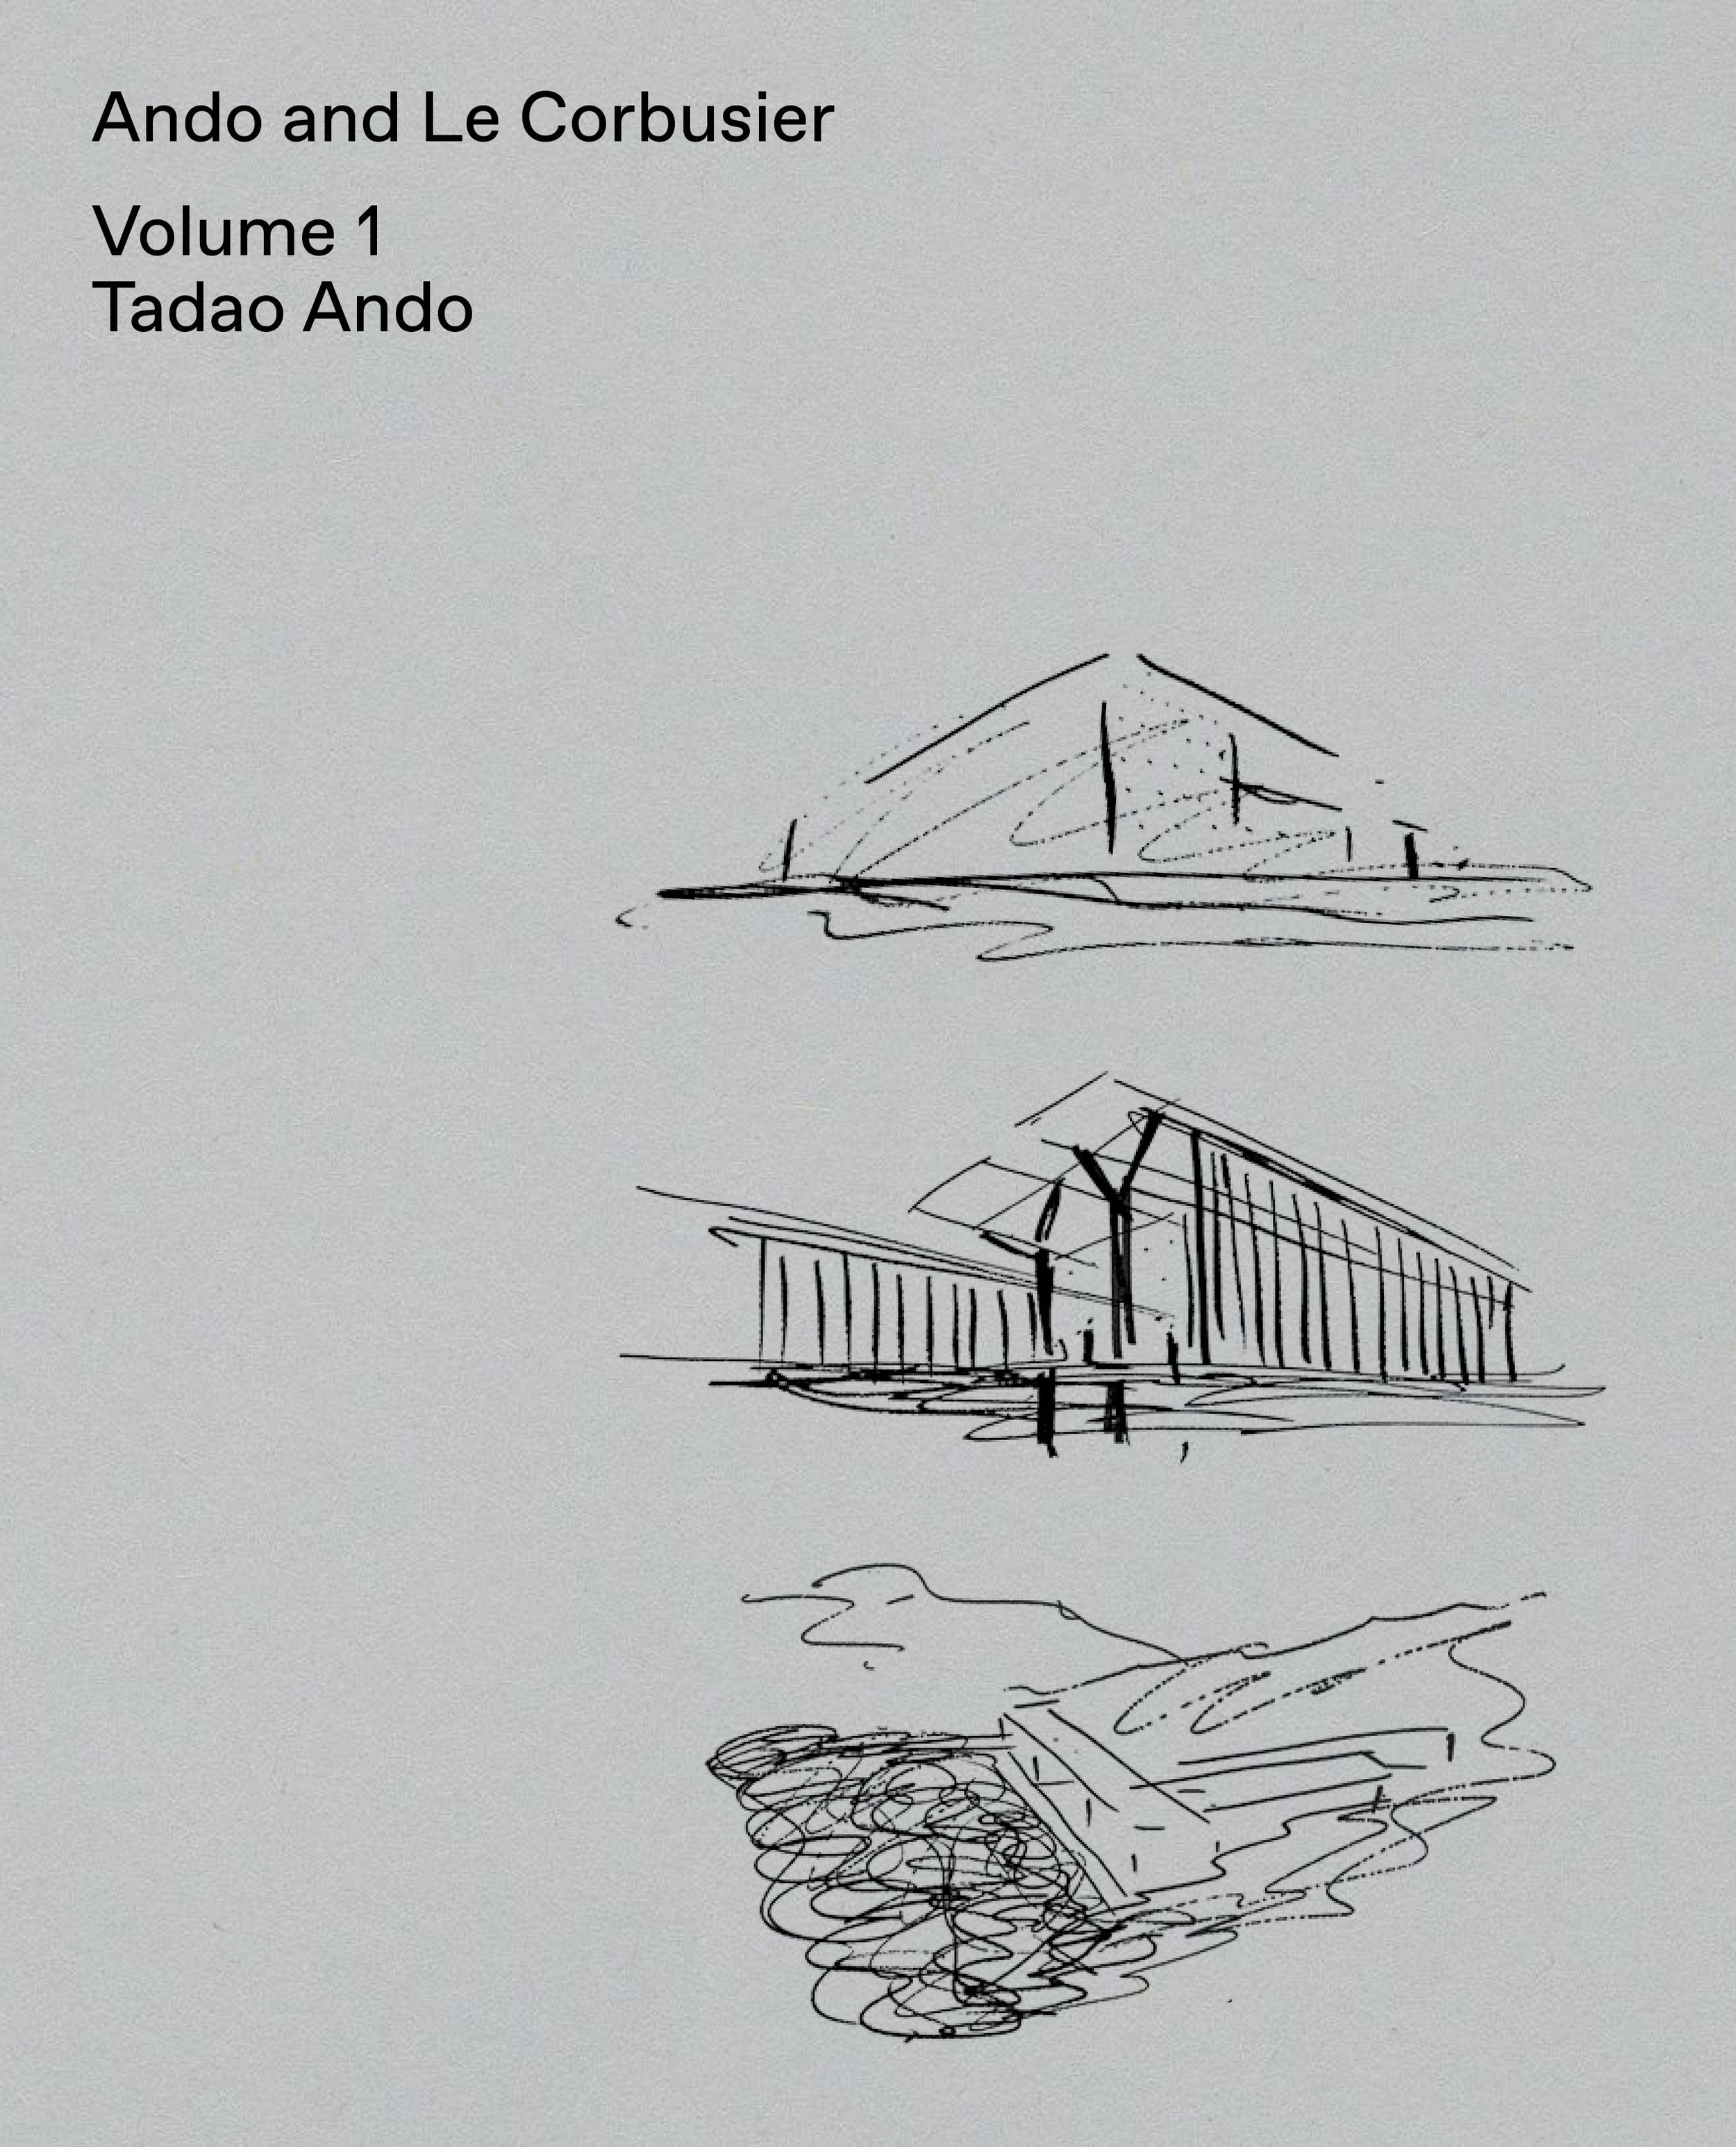 Ando and Le Corbusier, Volume 1: Tadao Ando $55